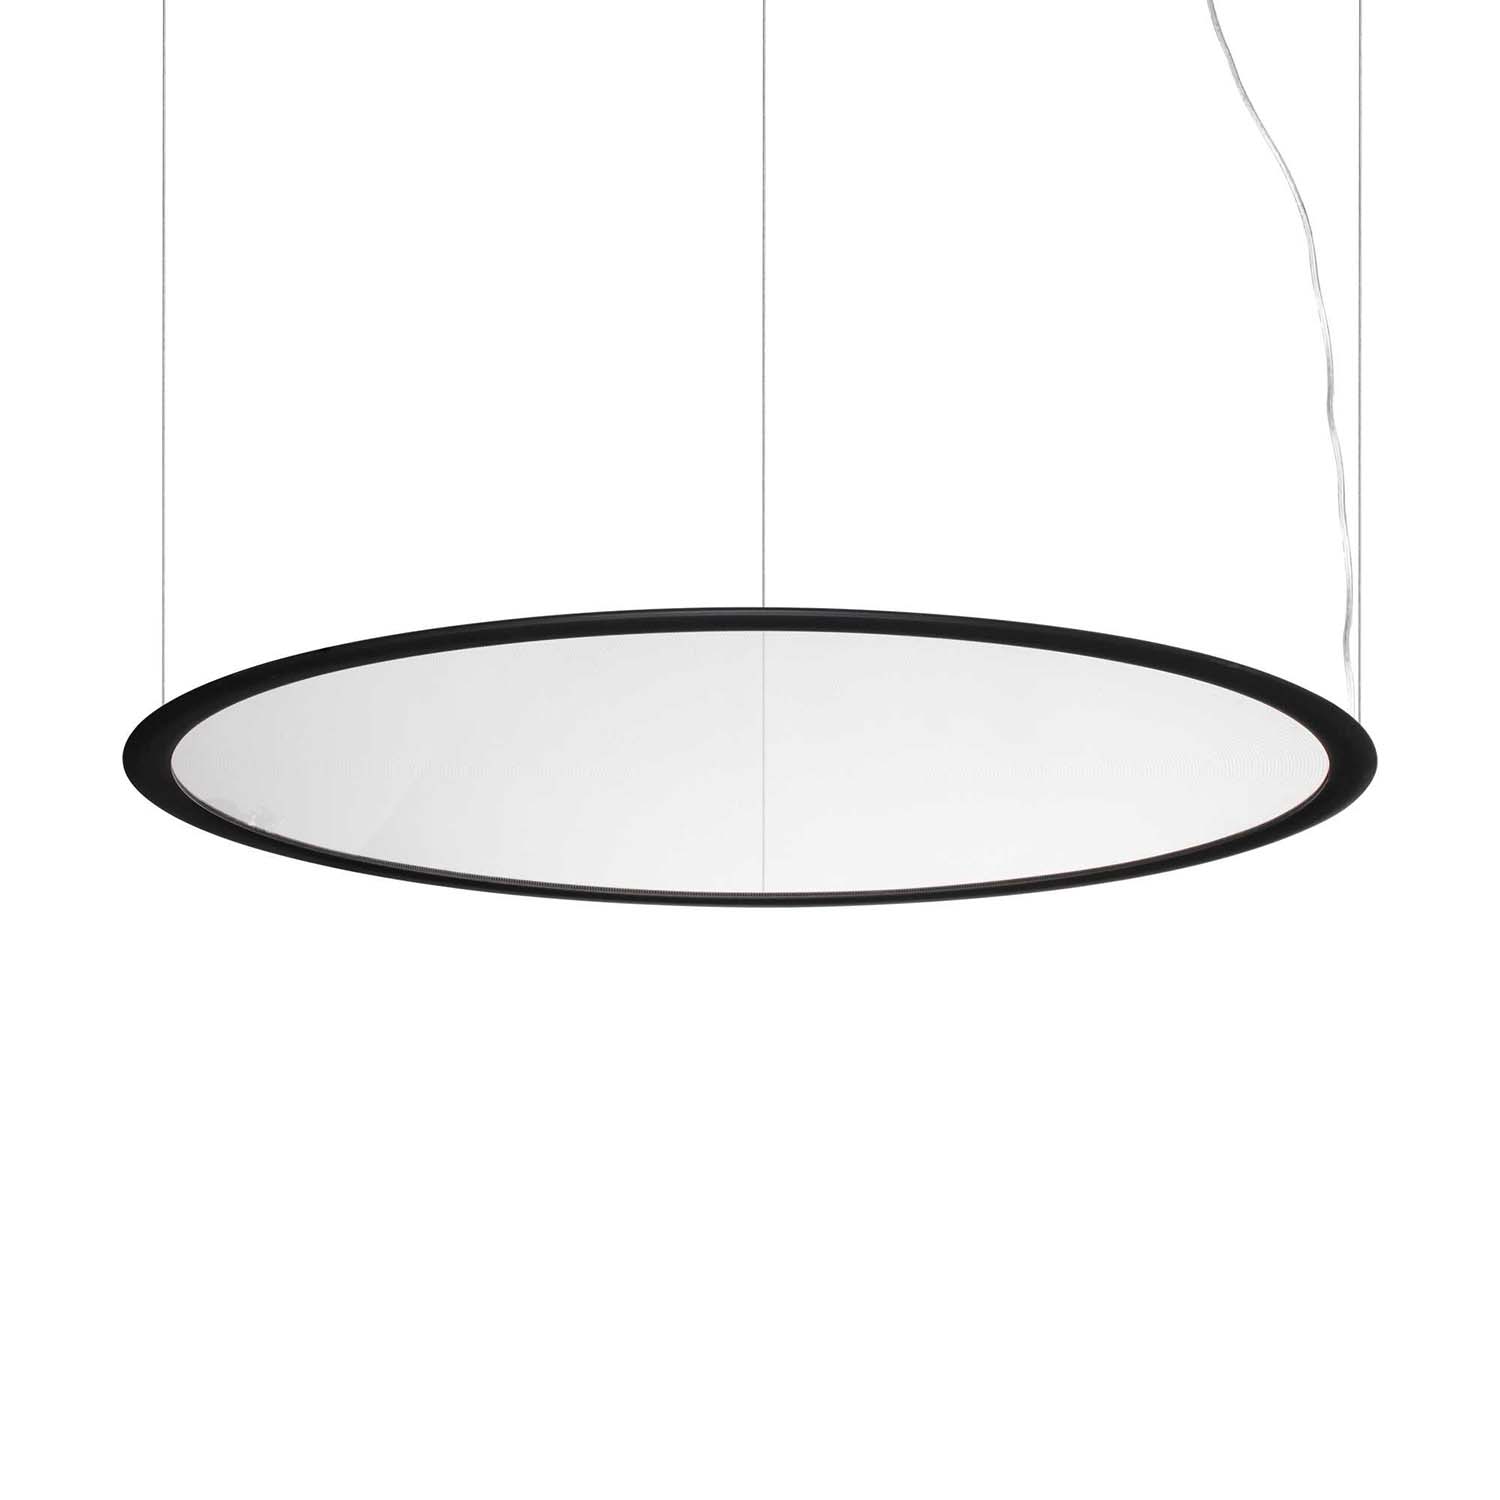 ORBIT - Modern black or white LED disk pendant light